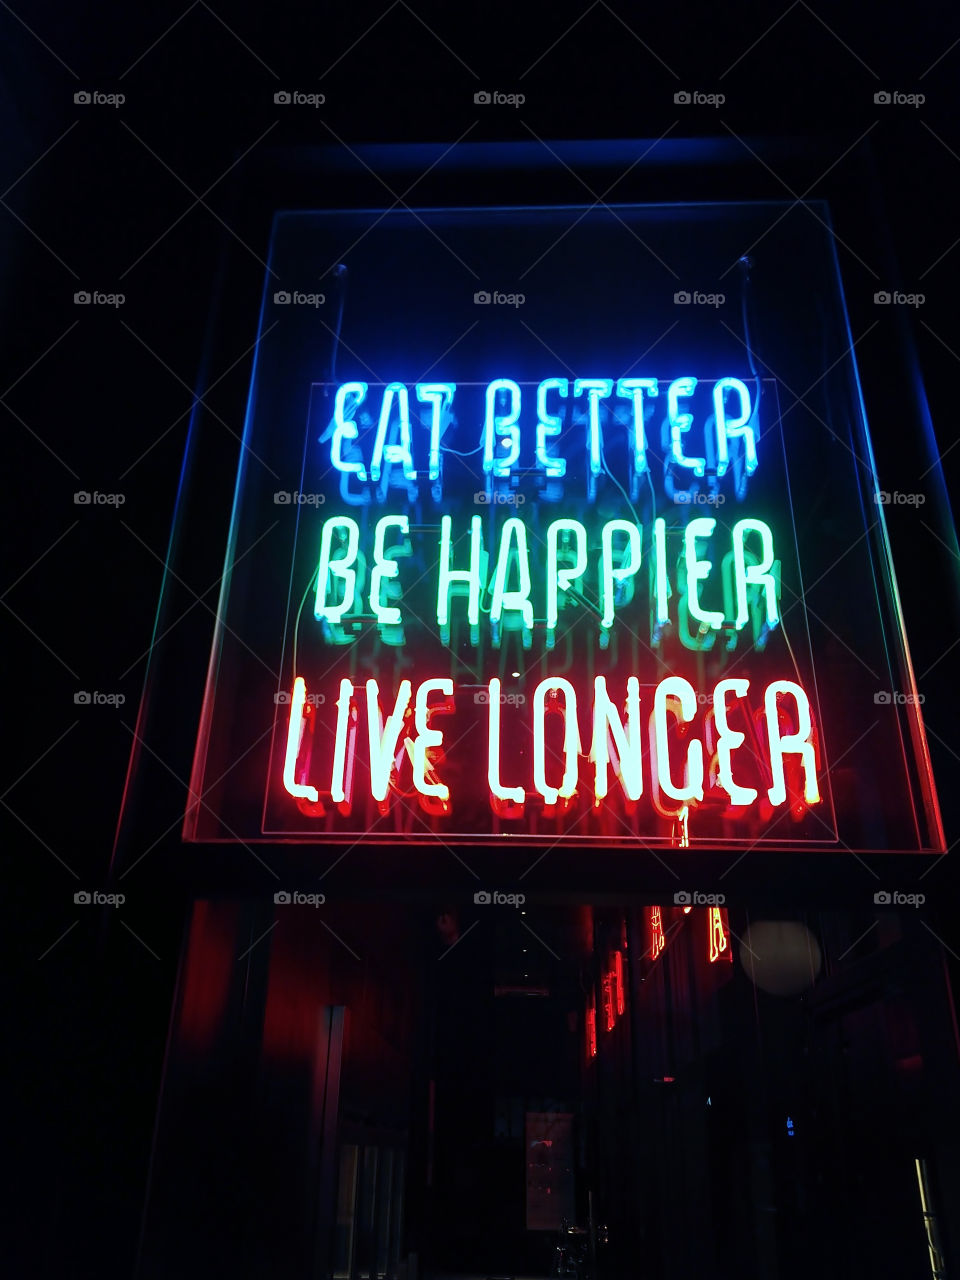 EAT BETTER
BE HAPPIER
LIVE LONGER
PASSATGE DE LES MANUFACTURES
BARCELONA